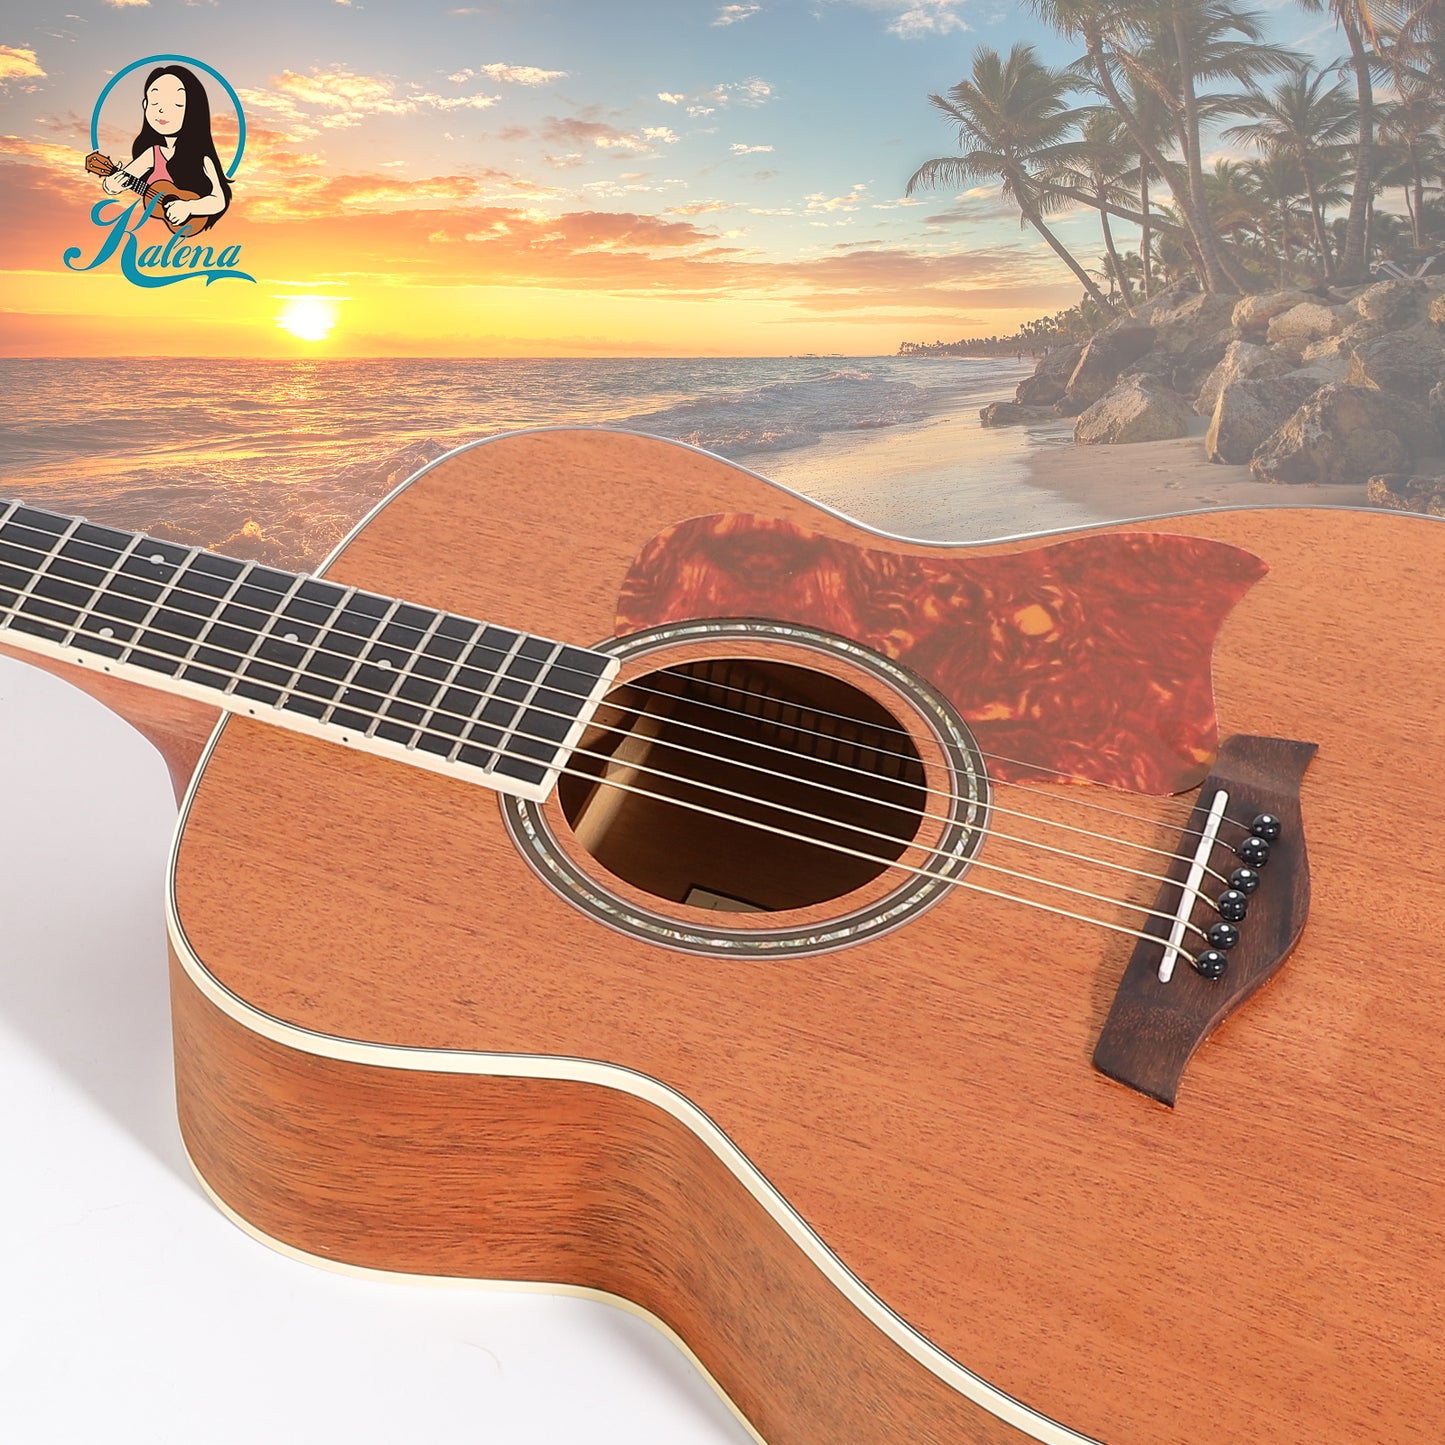 Kalena KM36 Mahogany 36" Acoustic Guitar Complete Set